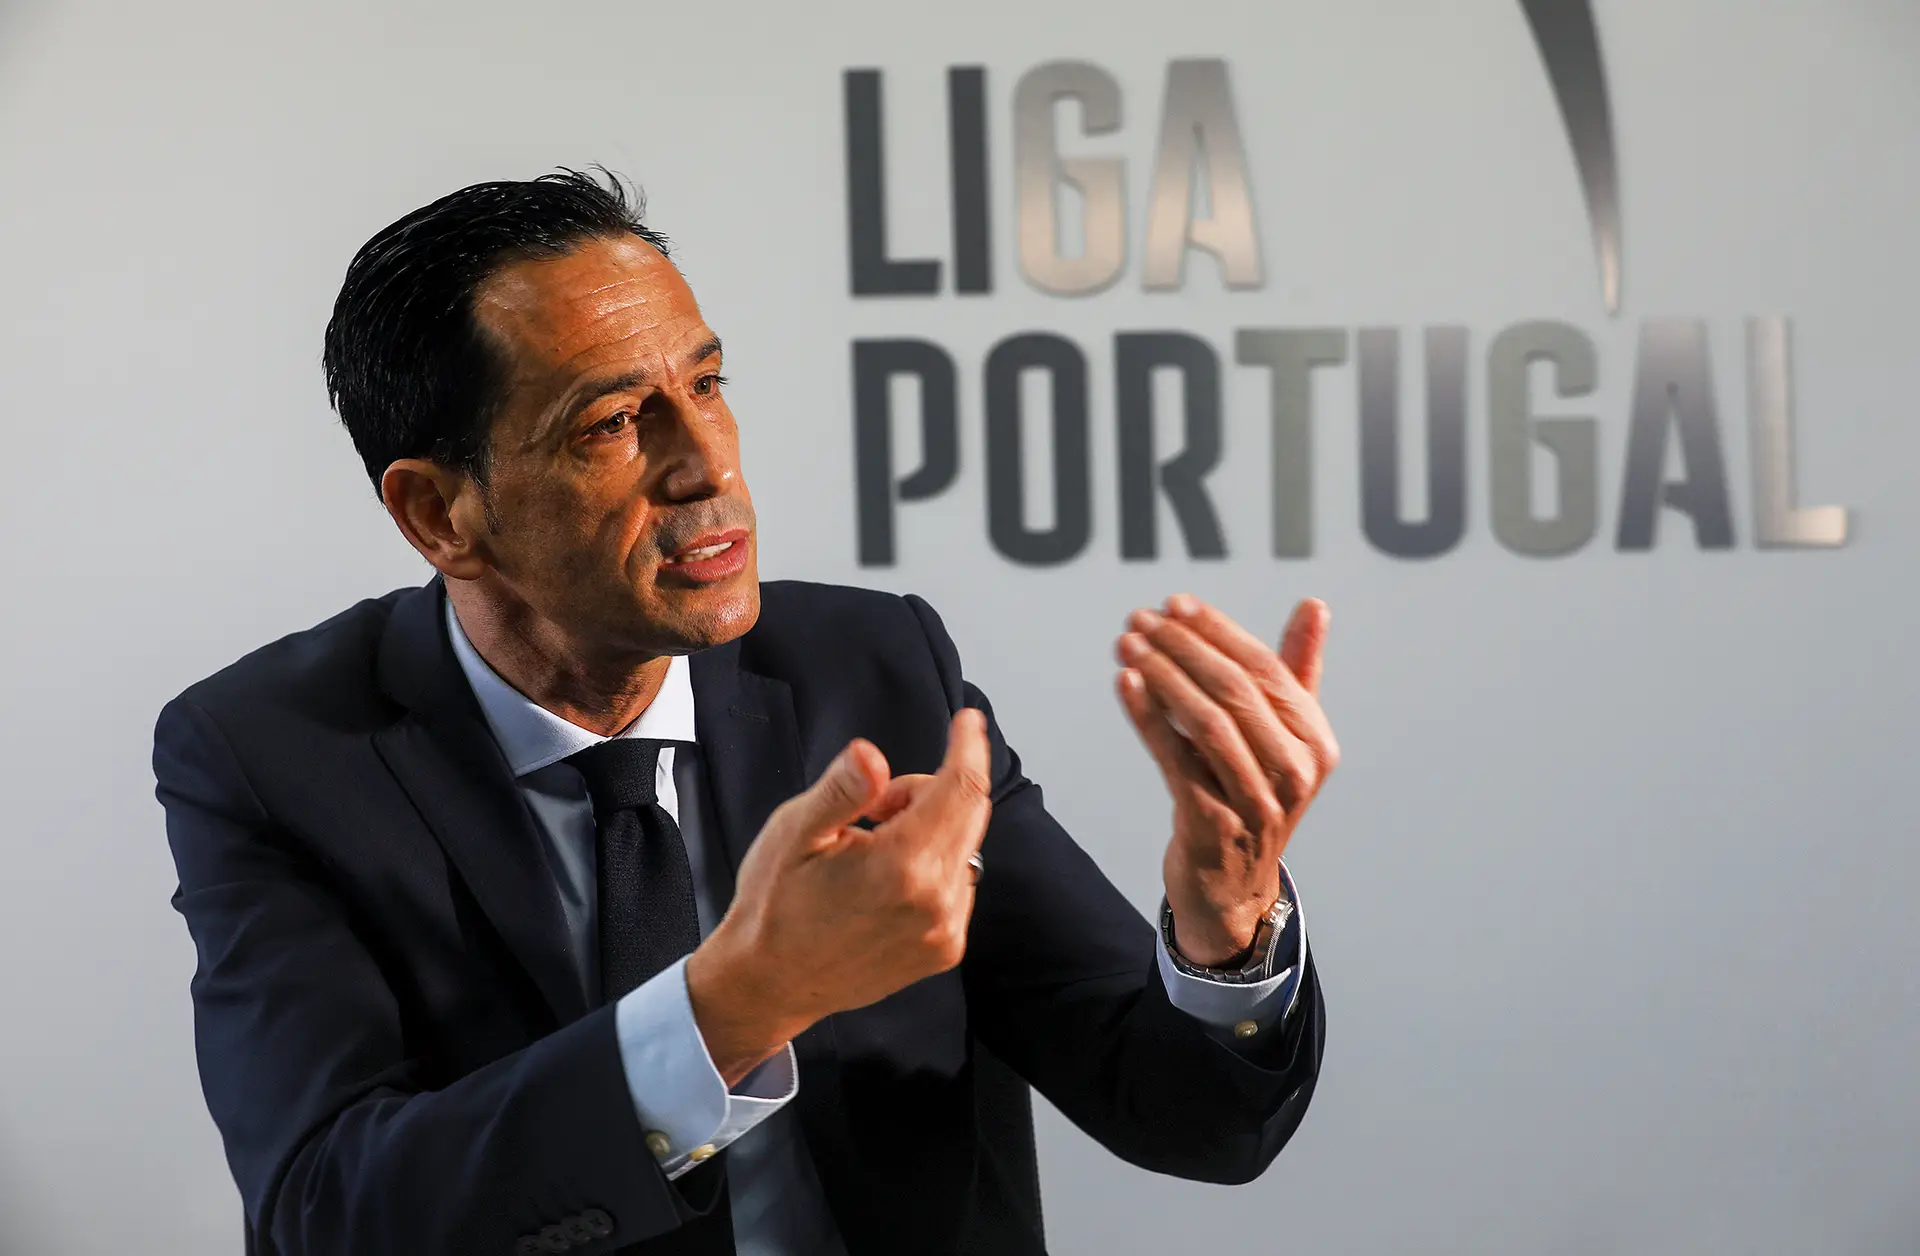 Liga Portugal - Qual a camisola que vais vestir para